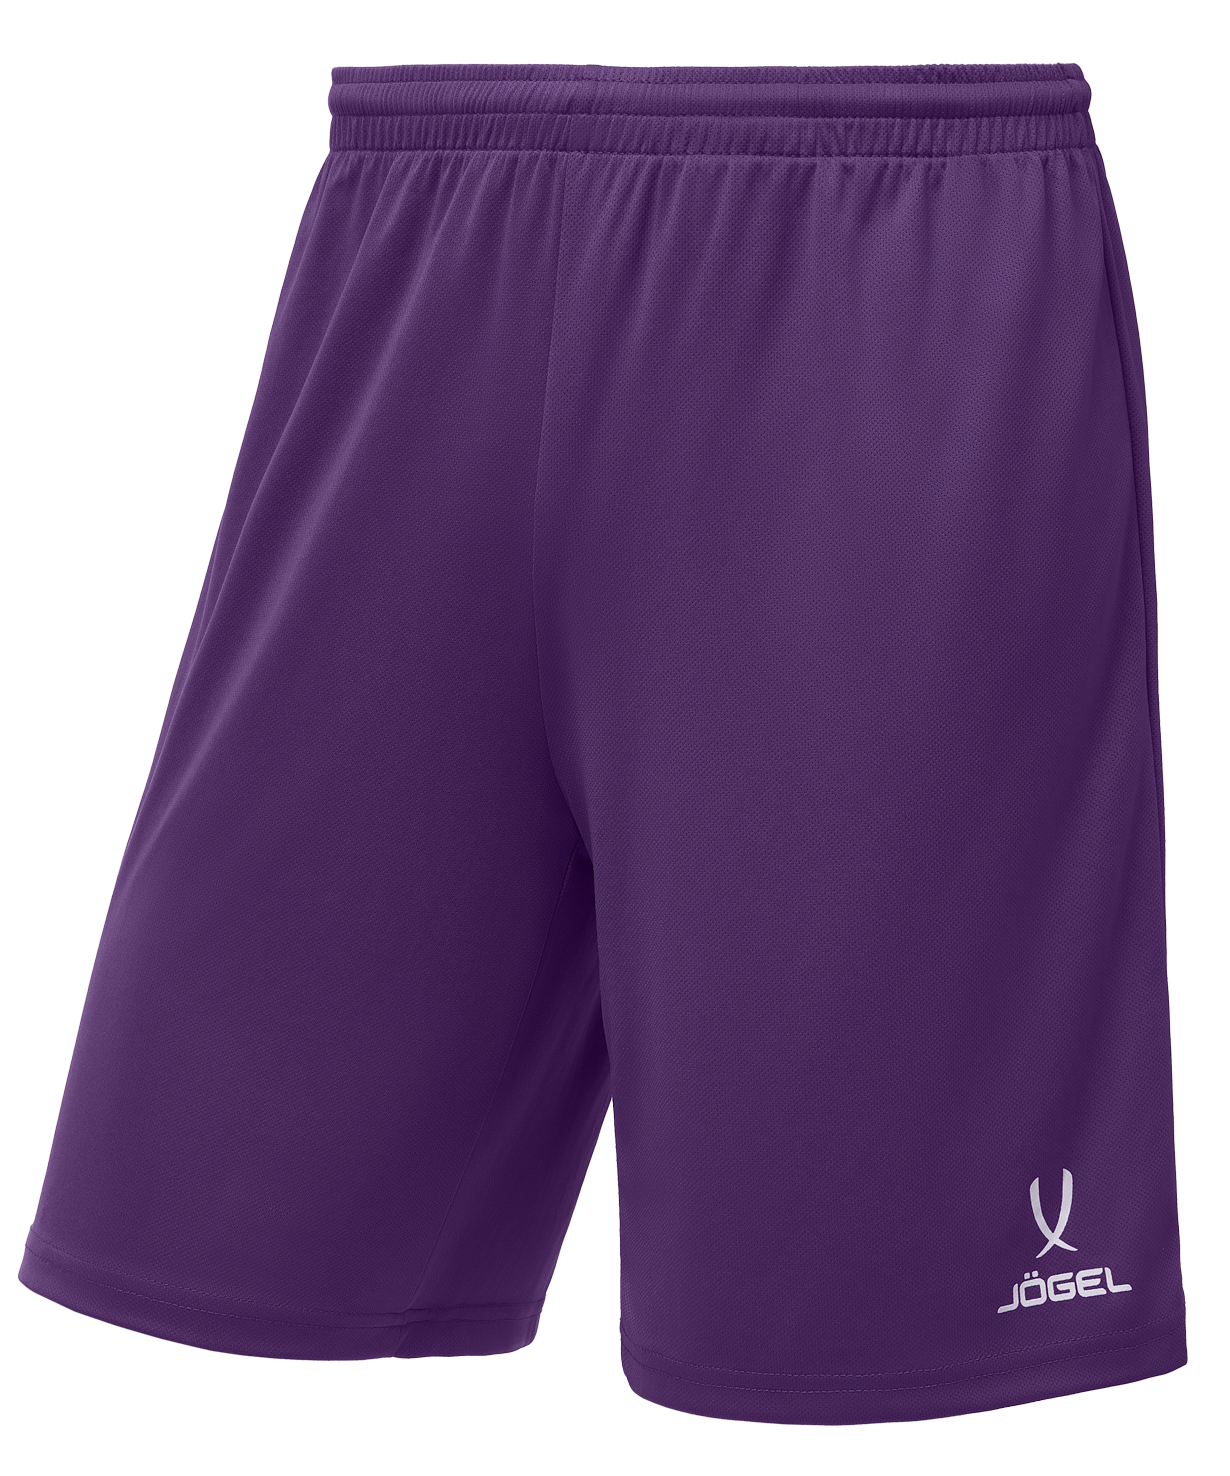 Шорты баскетбольные Jogel Camp Basic, фиолетовый, детский - YM шорты баскетбольные j gel camp basic фиолетовый